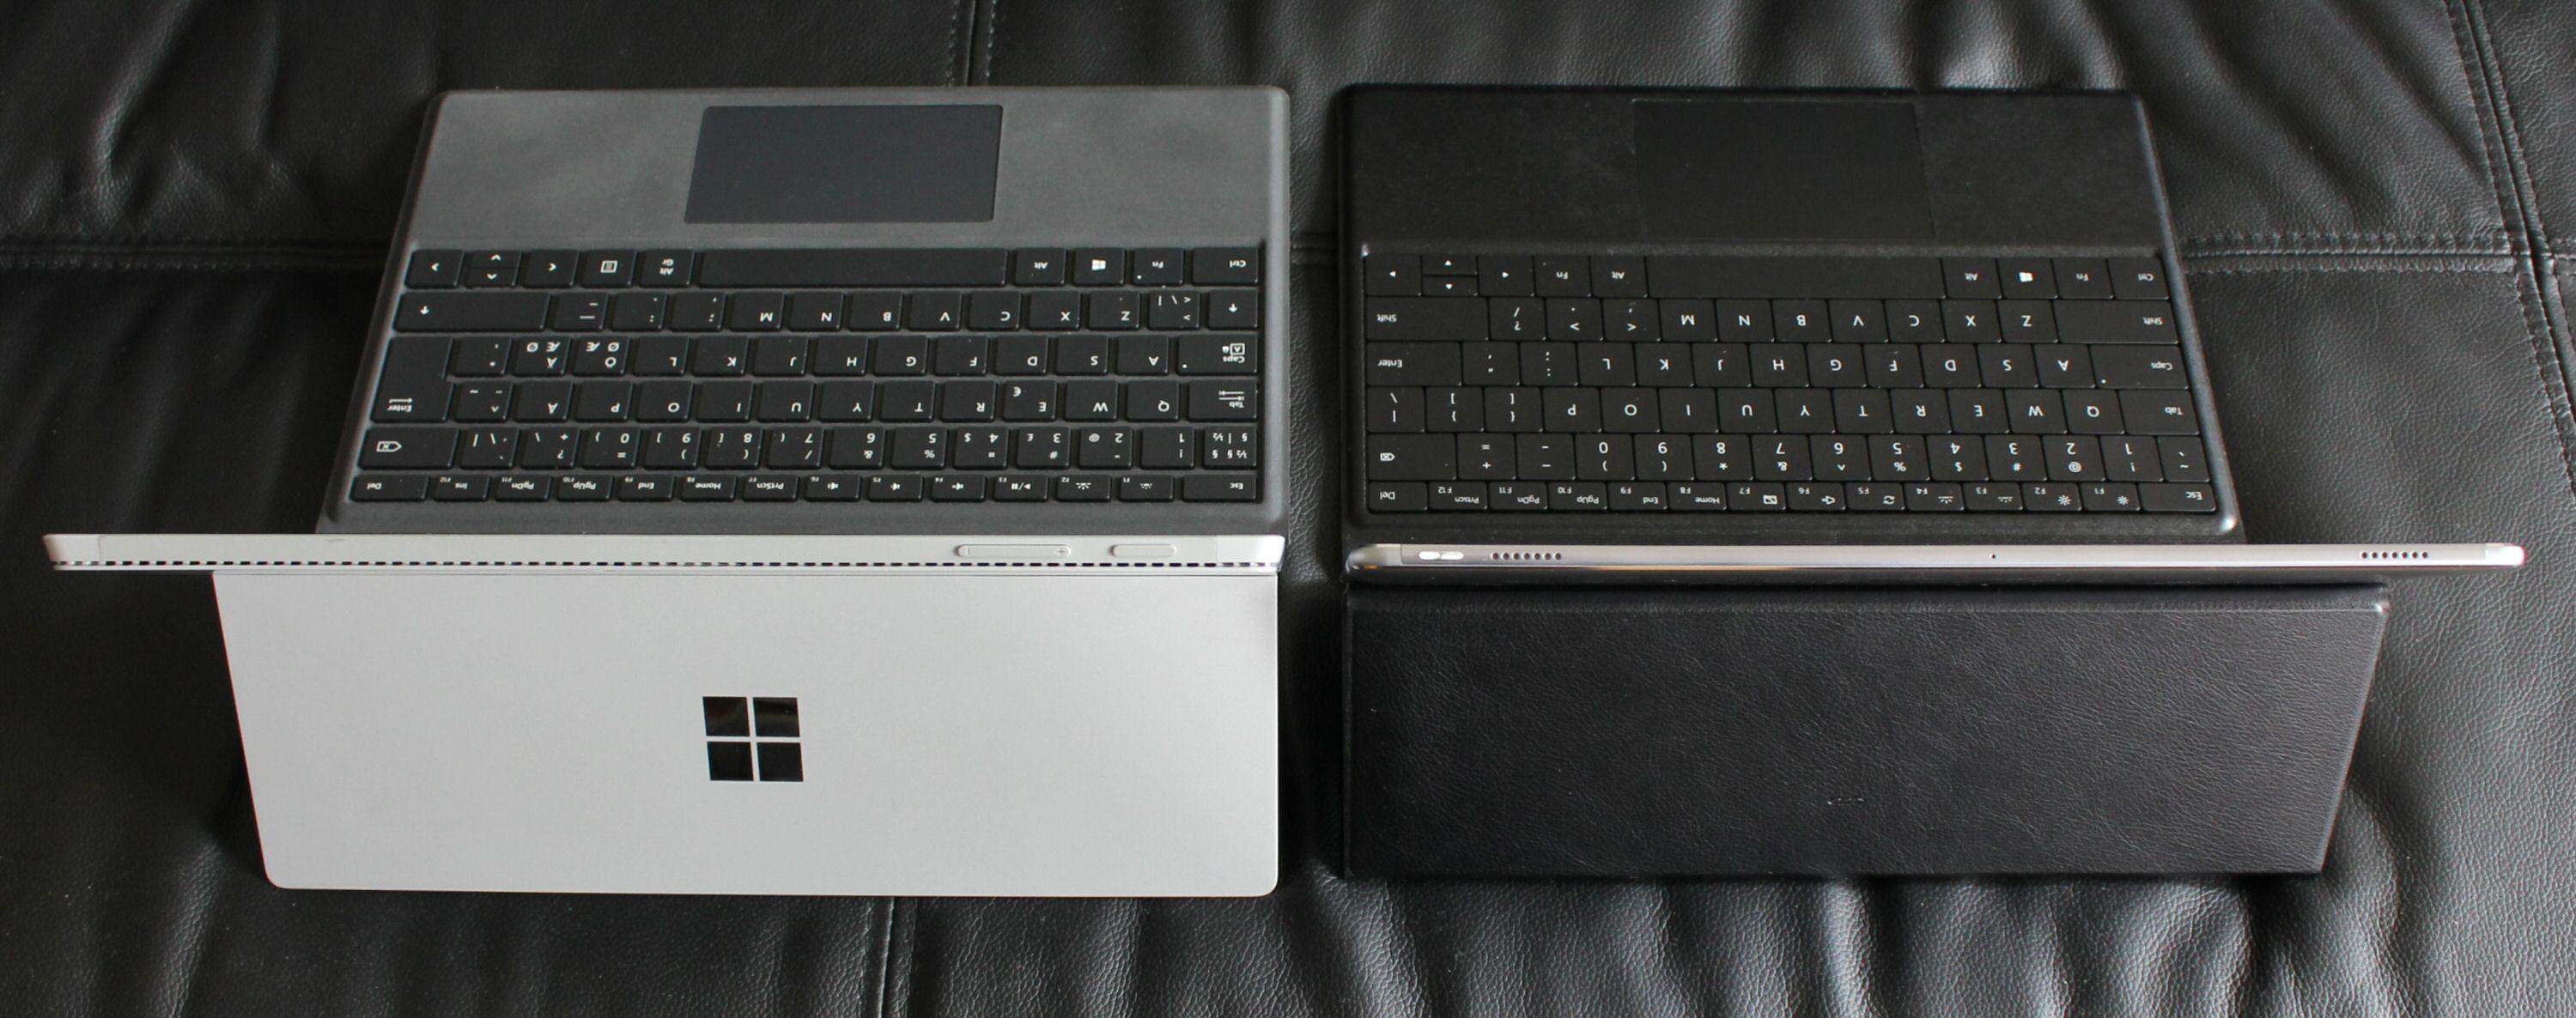 MateBook og Surface Pro 4 har litt til felles, som avtagbart tastaturdeksel. Rent utseendemessig er MateBook litt tynnere, litt mindre og gjør seg bedre i skinnsofa'n.